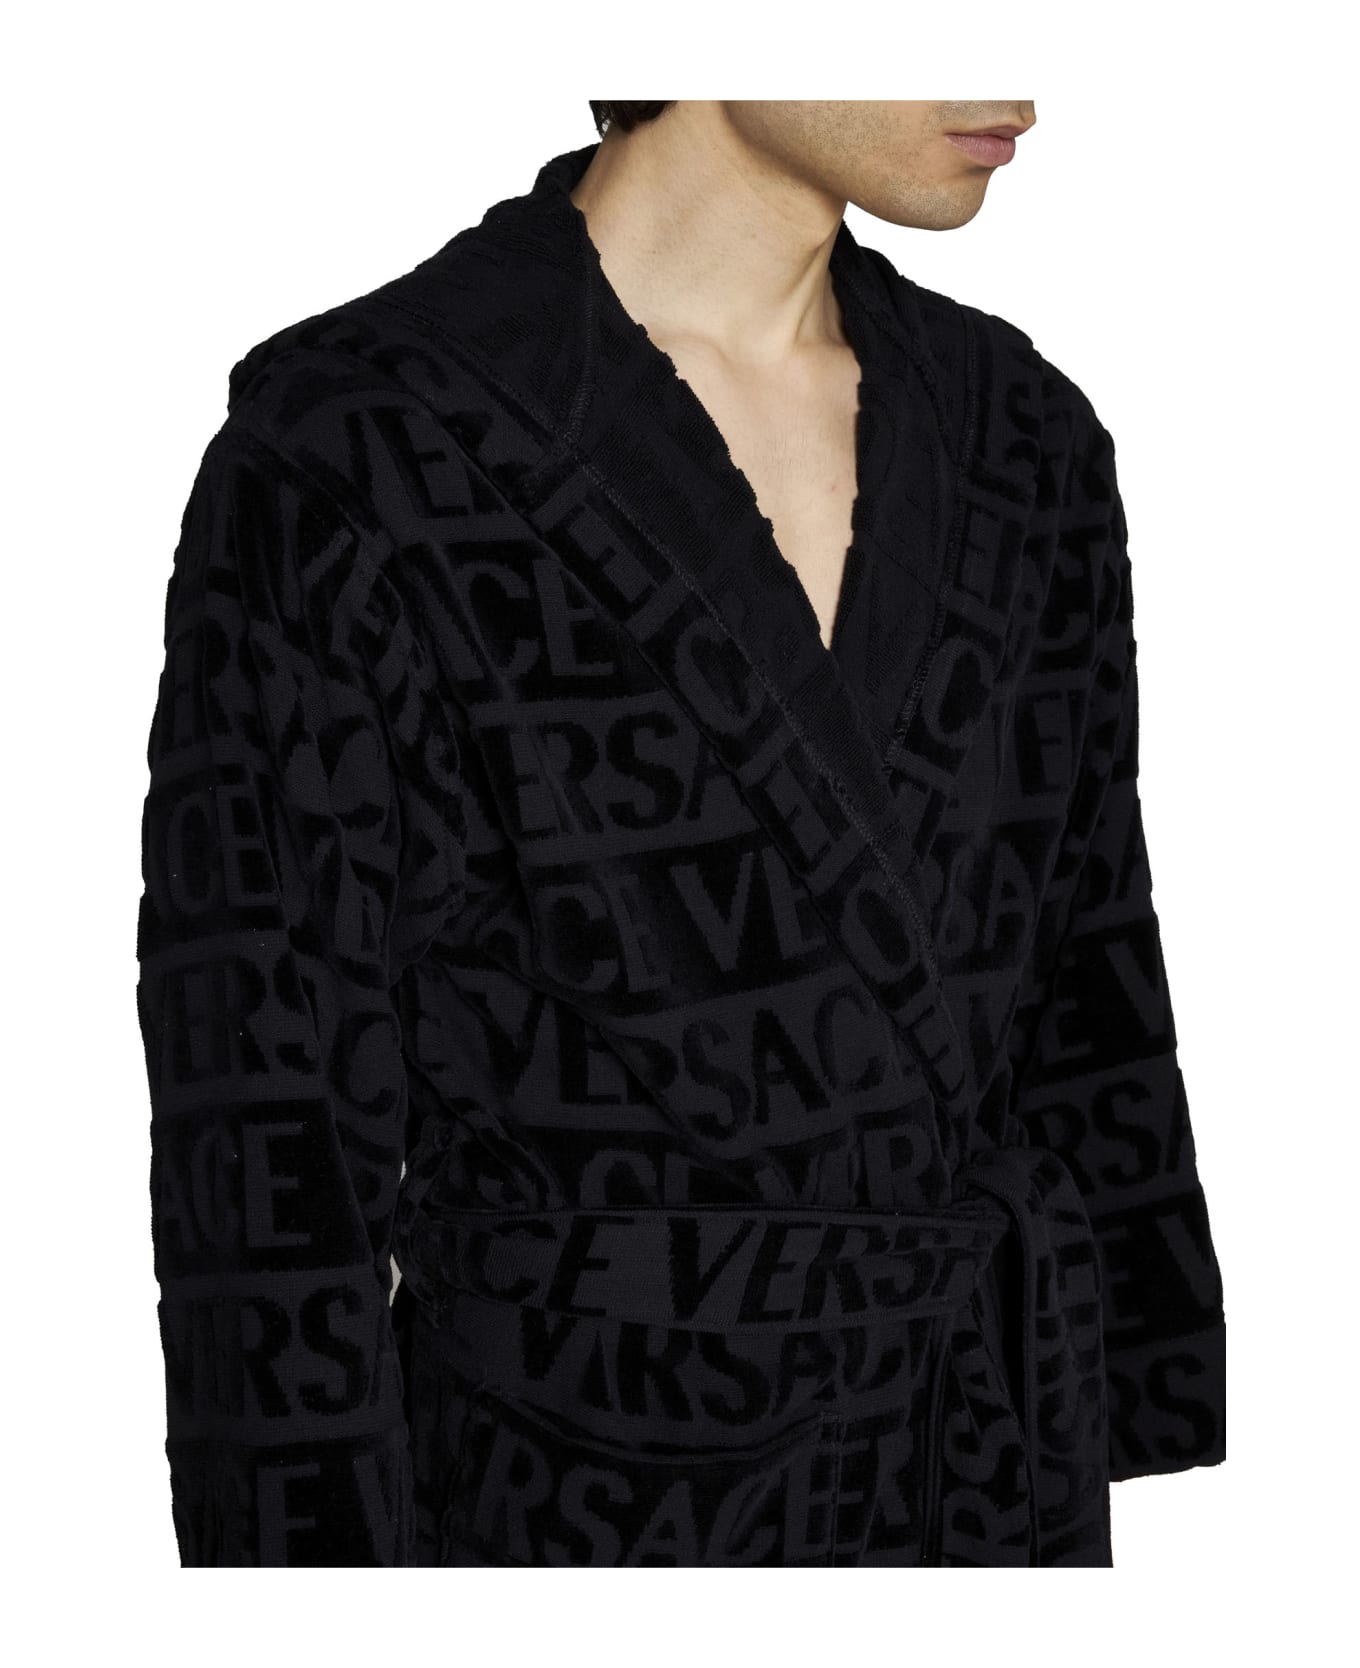 Versace Sequin Logo Bathrobe - Black